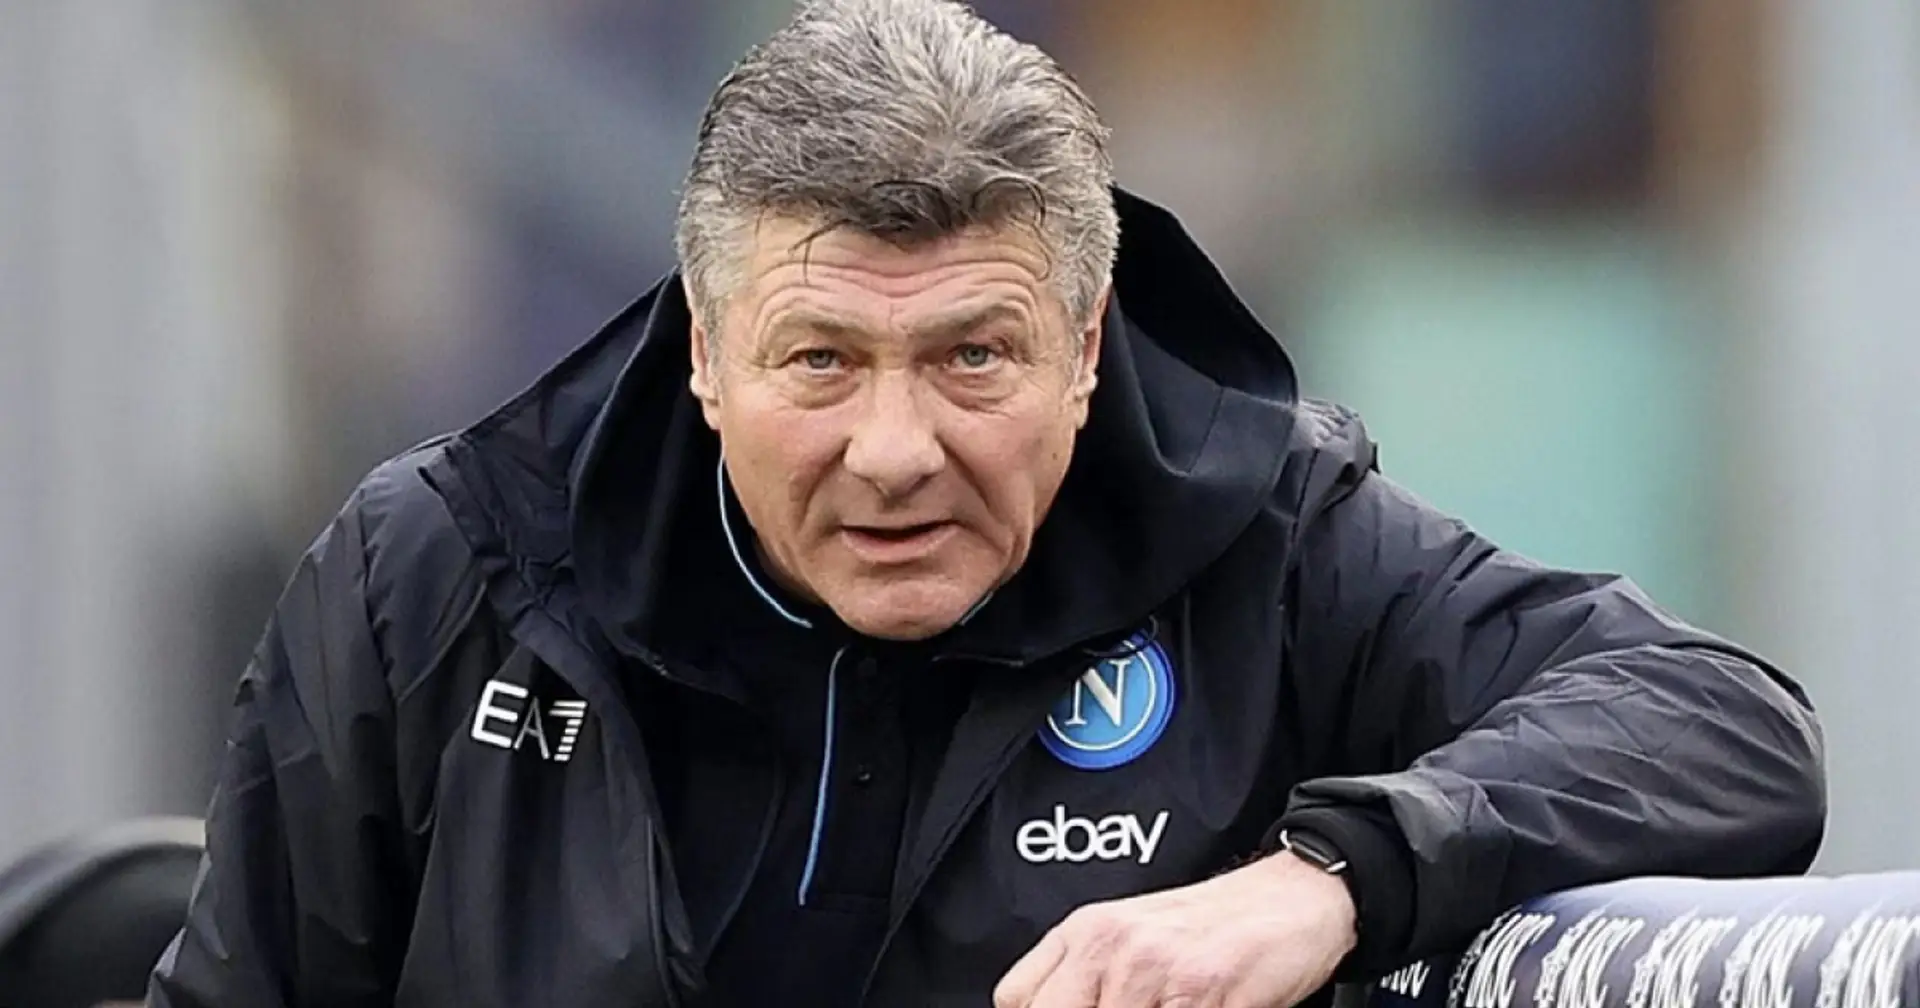 El Napoli despide al entrenador 2 días antes de la eliminatoria vs Barça, elige un sustituto